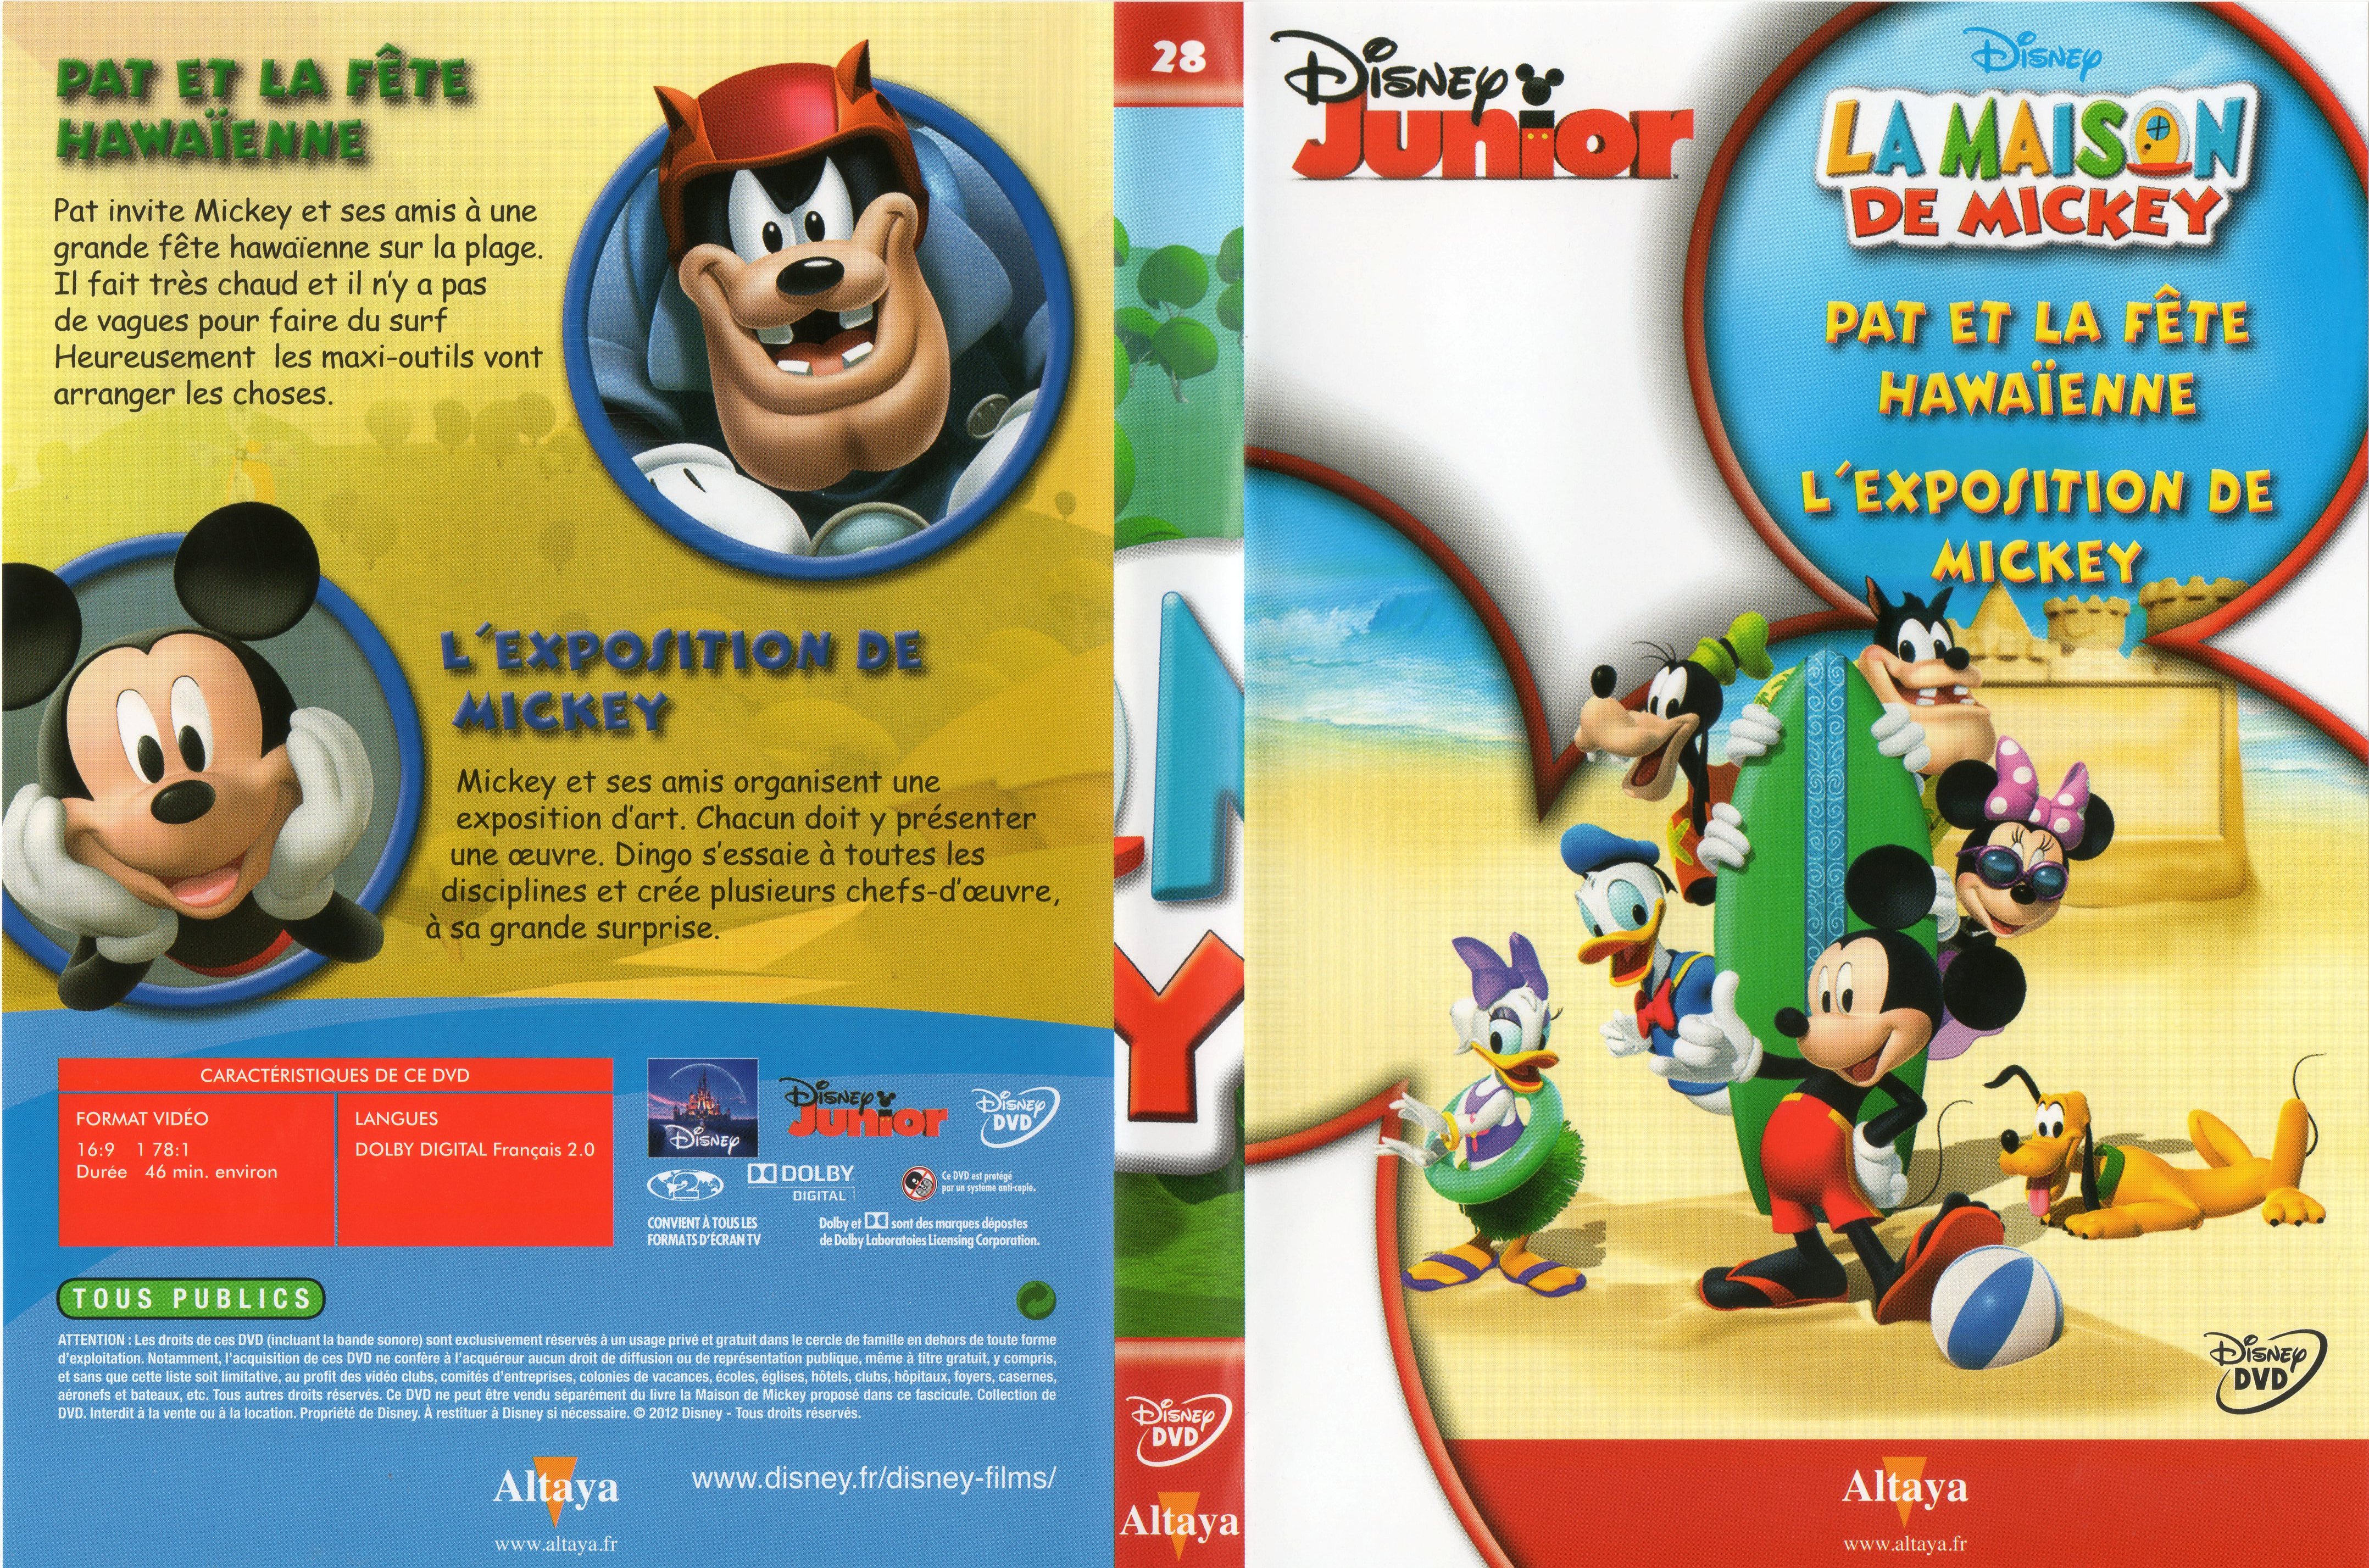 Jaquette DVD La maison de Mickey DVD 28